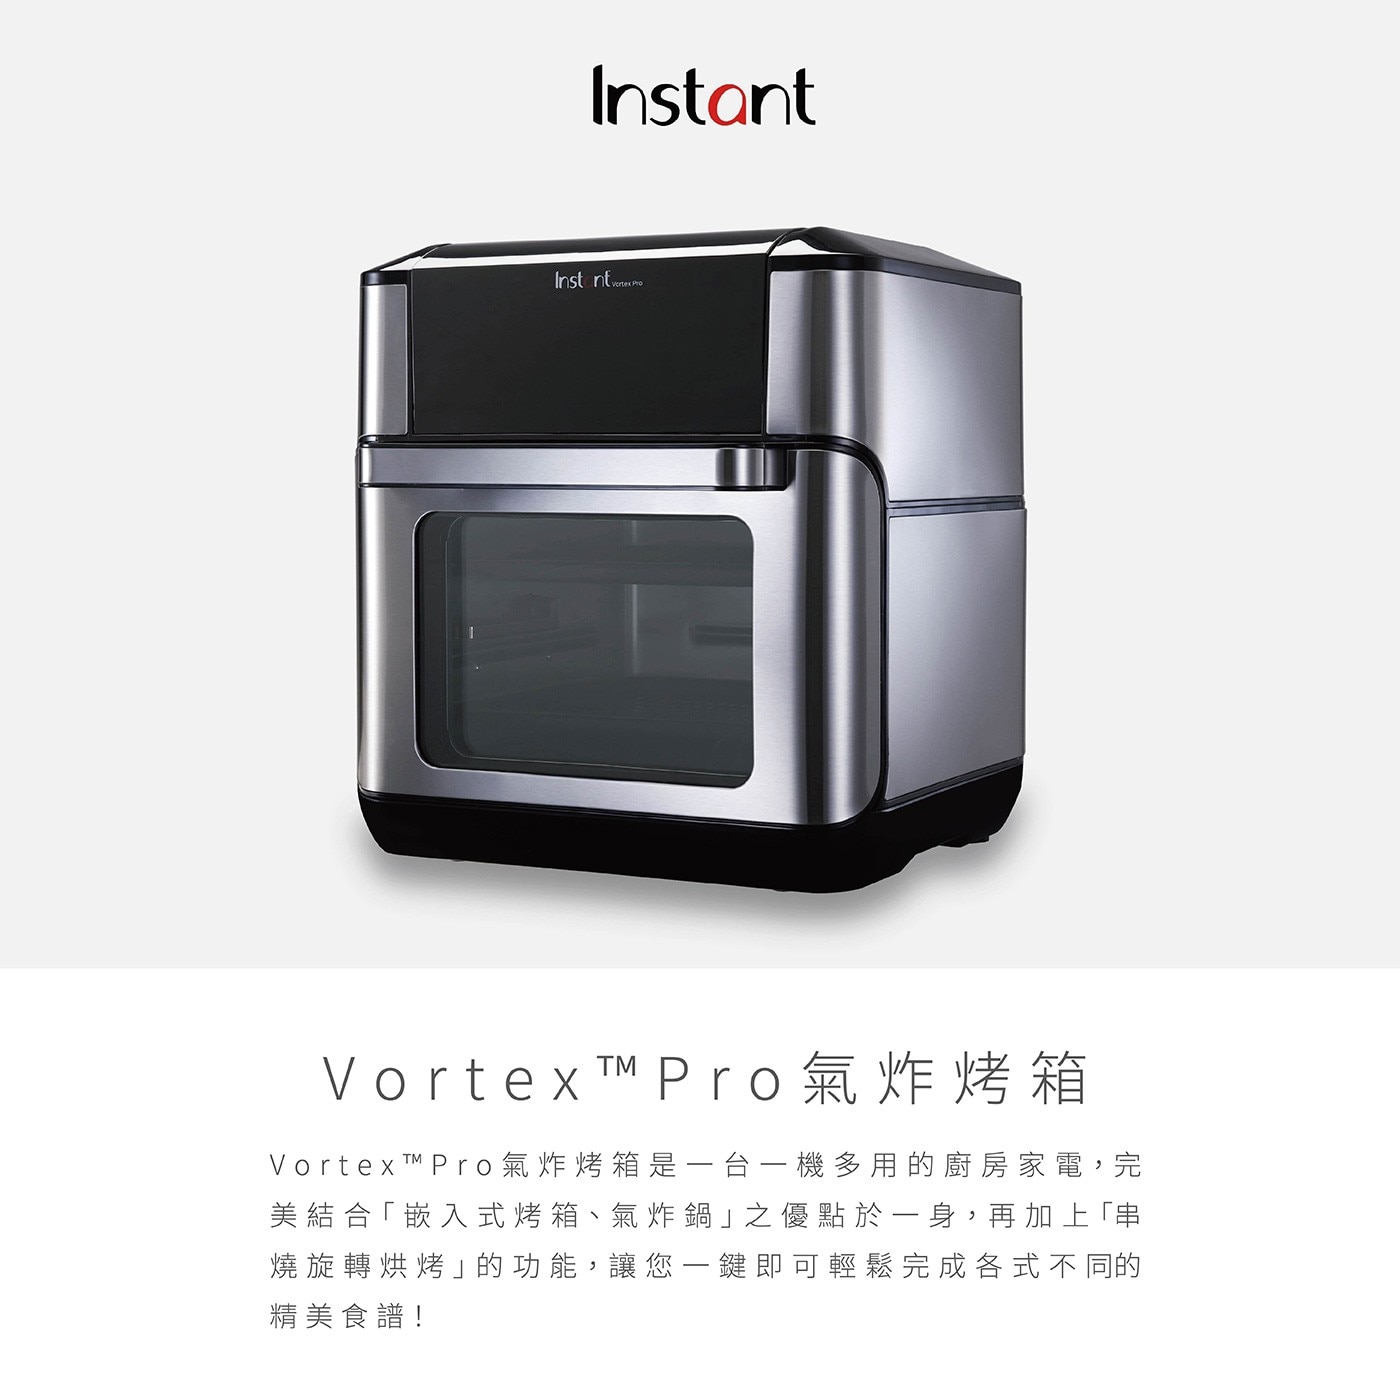 Instant Vortex Pro 9.5公升氣炸烤箱,Vortex Pro氣炸烤箱是一台一機多用的廚房家電,完美結合「嵌入式烤箱、氣炸鍋」之優點於一身,再加上「串 燒旋轉烘烤」的功能,讓您一鍵即可輕鬆完成各式不同的精美食譜!